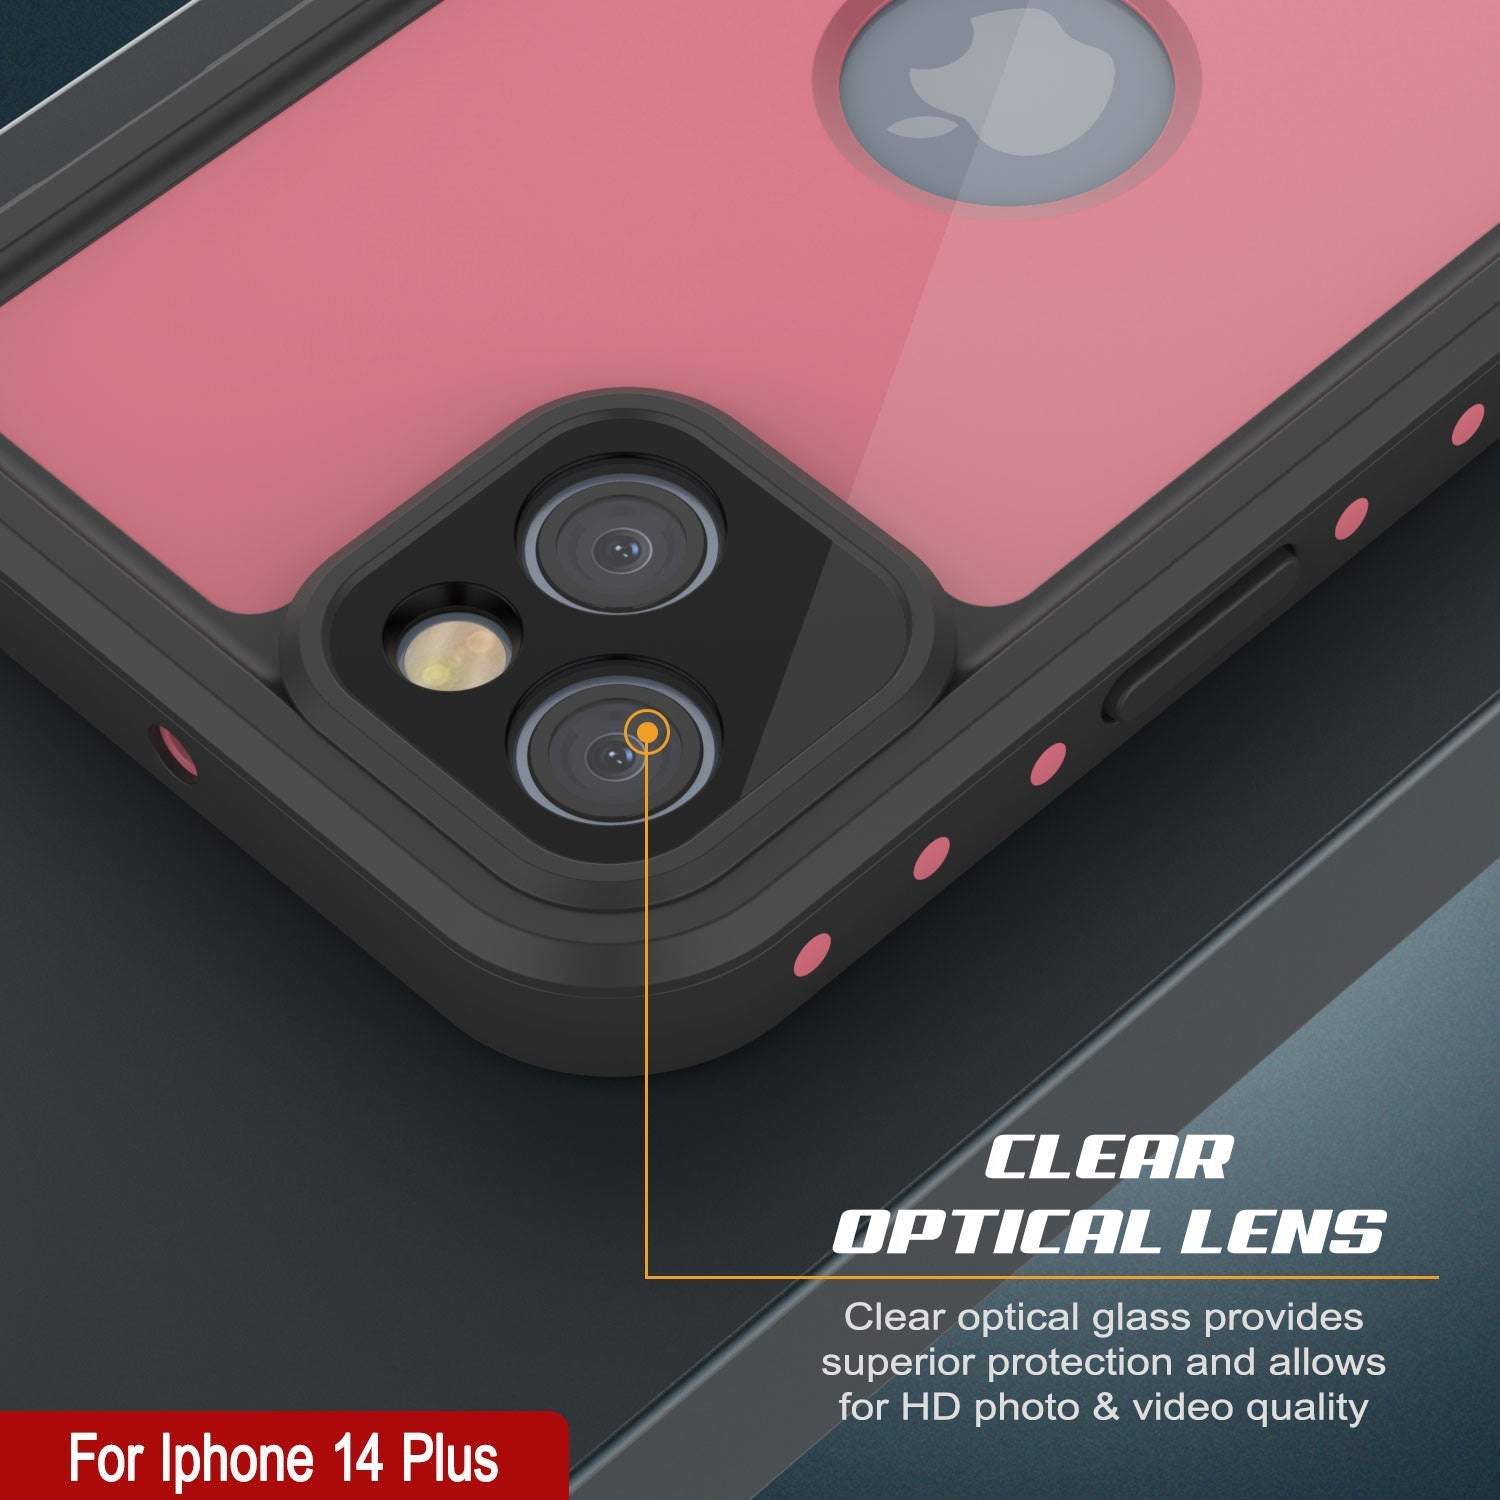 iPhone 14 Plus Waterproof IP68 Case, Punkcase [Pink] [StudStar Series] [Slim Fit] [Dirtproof]